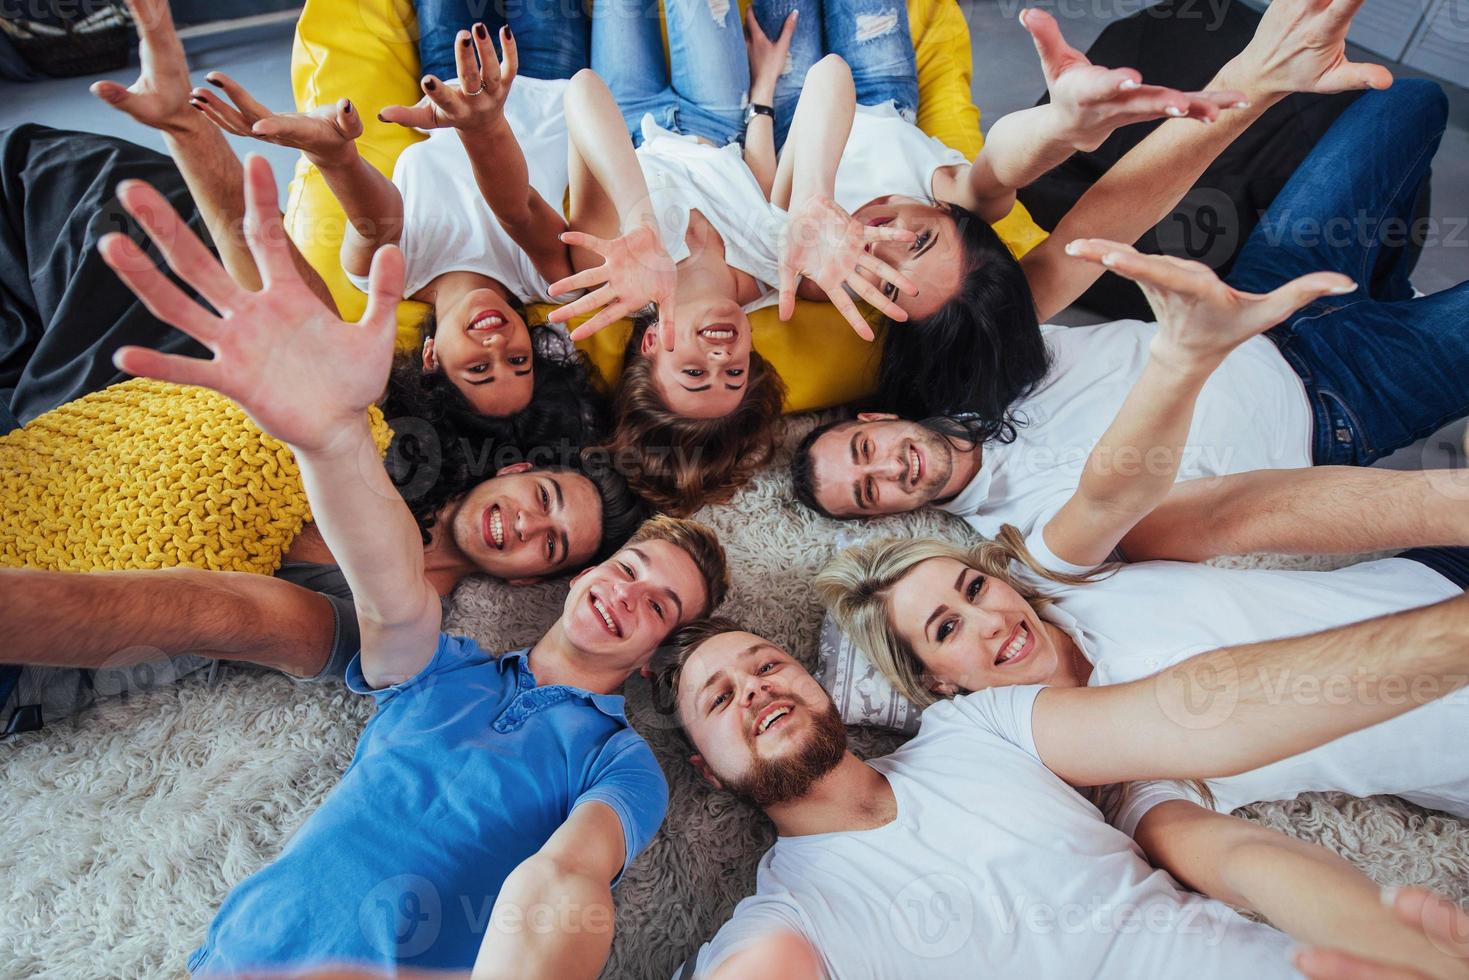 grupp vackra unga människor som gör selfie liggande på golvet, bästa vänner tjejer och pojkar tillsammans har roligt, poserar känslomässigt livsstilskoncept foto